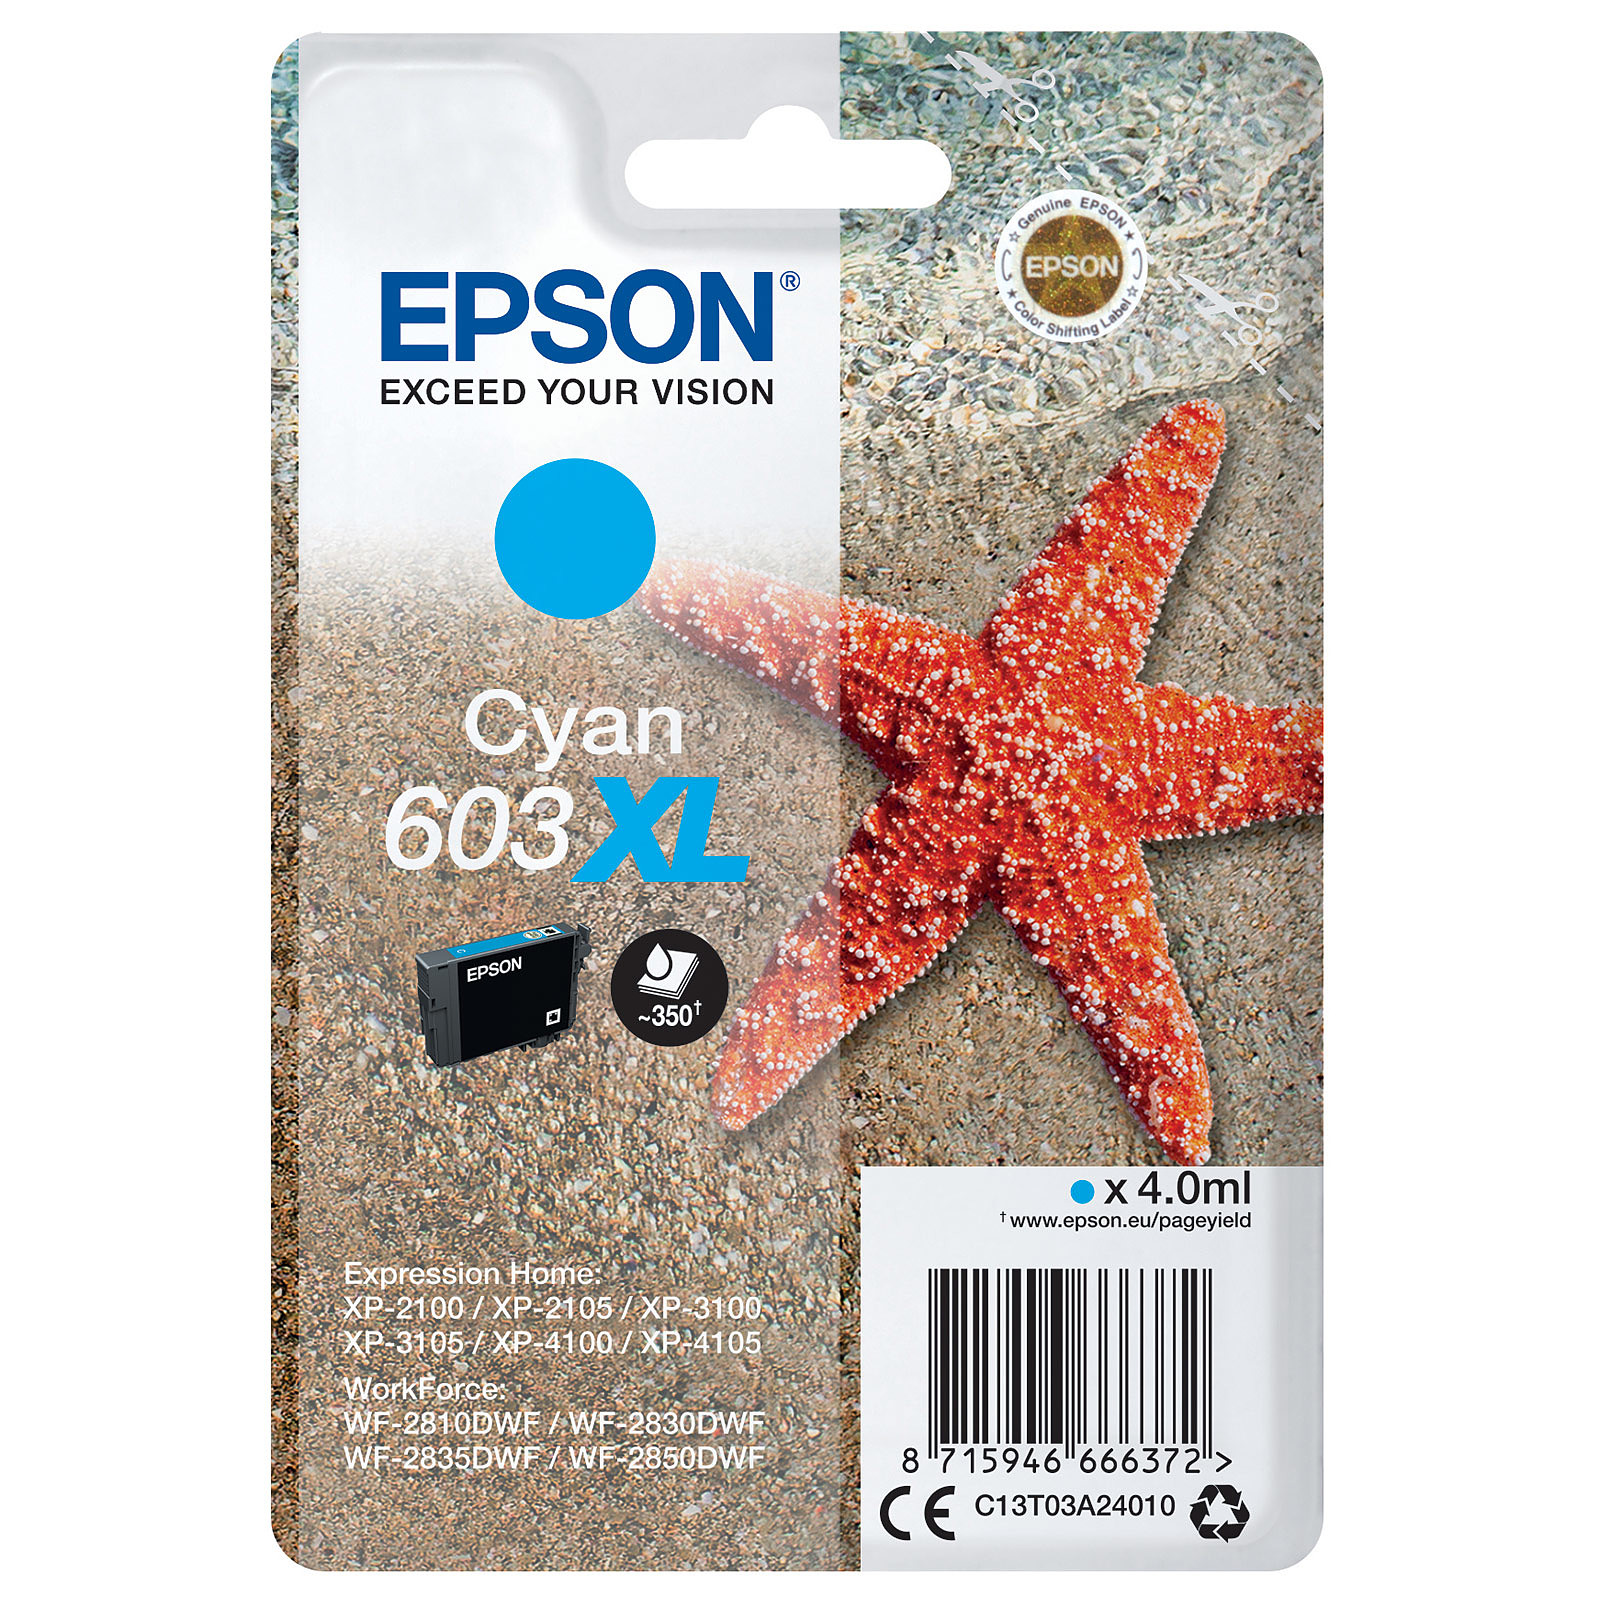 Epson Etoile de mer 603XL Cyan - Cartouche imprimante Epson